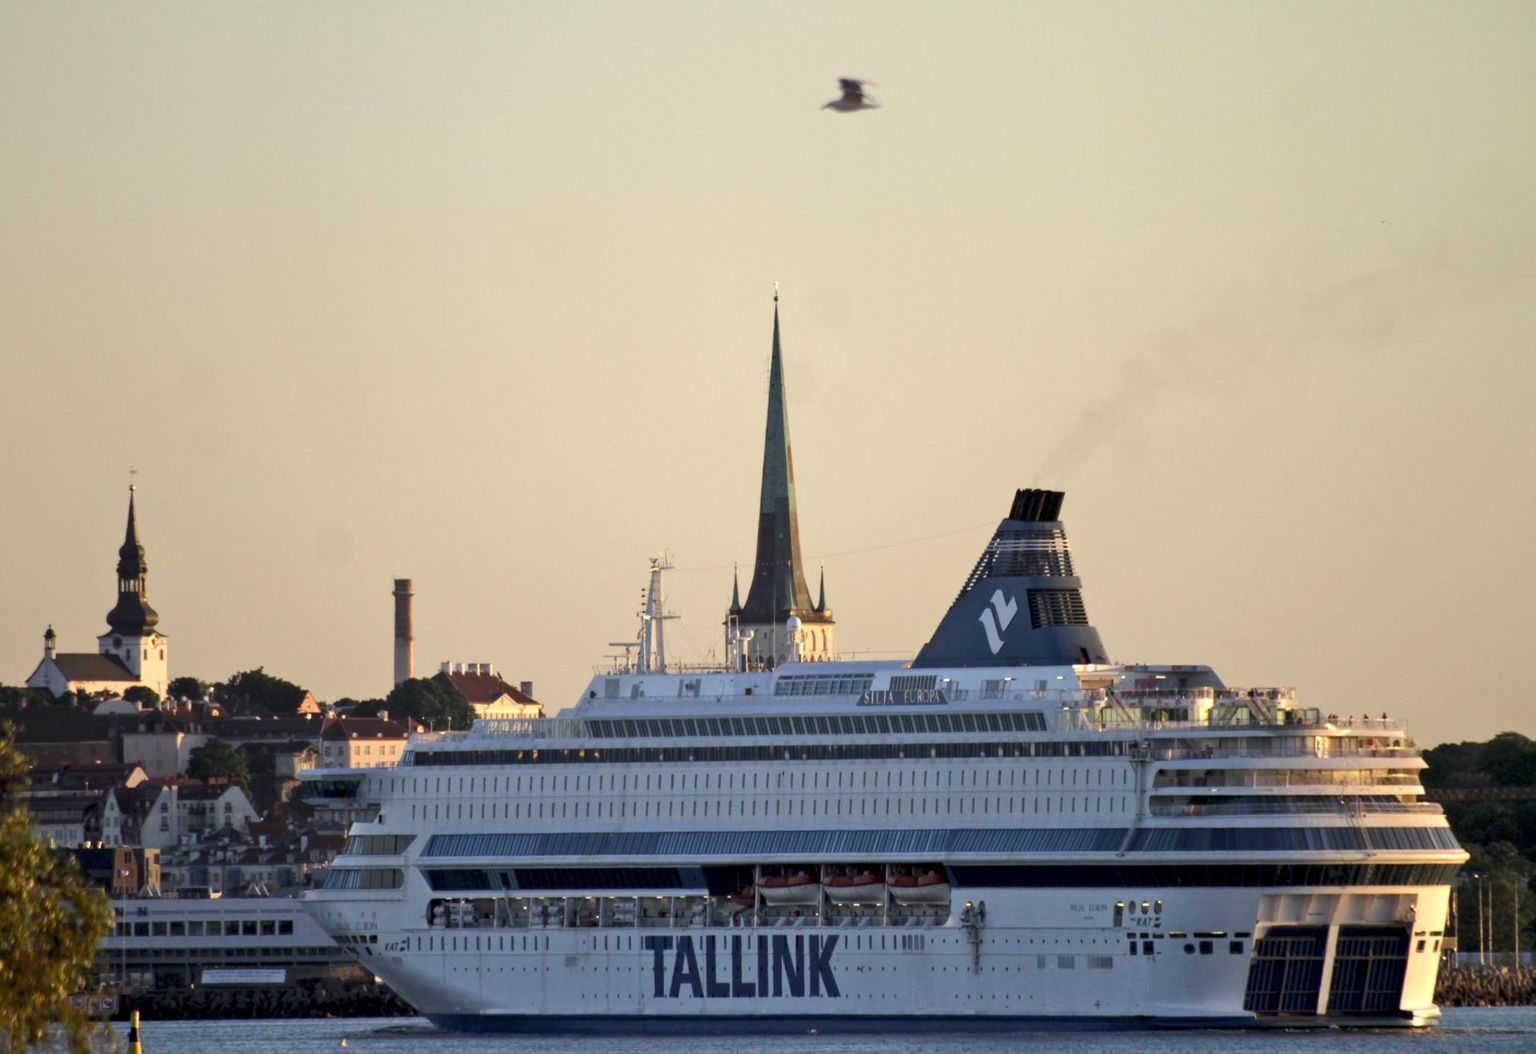 Tallinkile kuuluv Silja Europa on üks saastavamaid laevu Läänemerel.